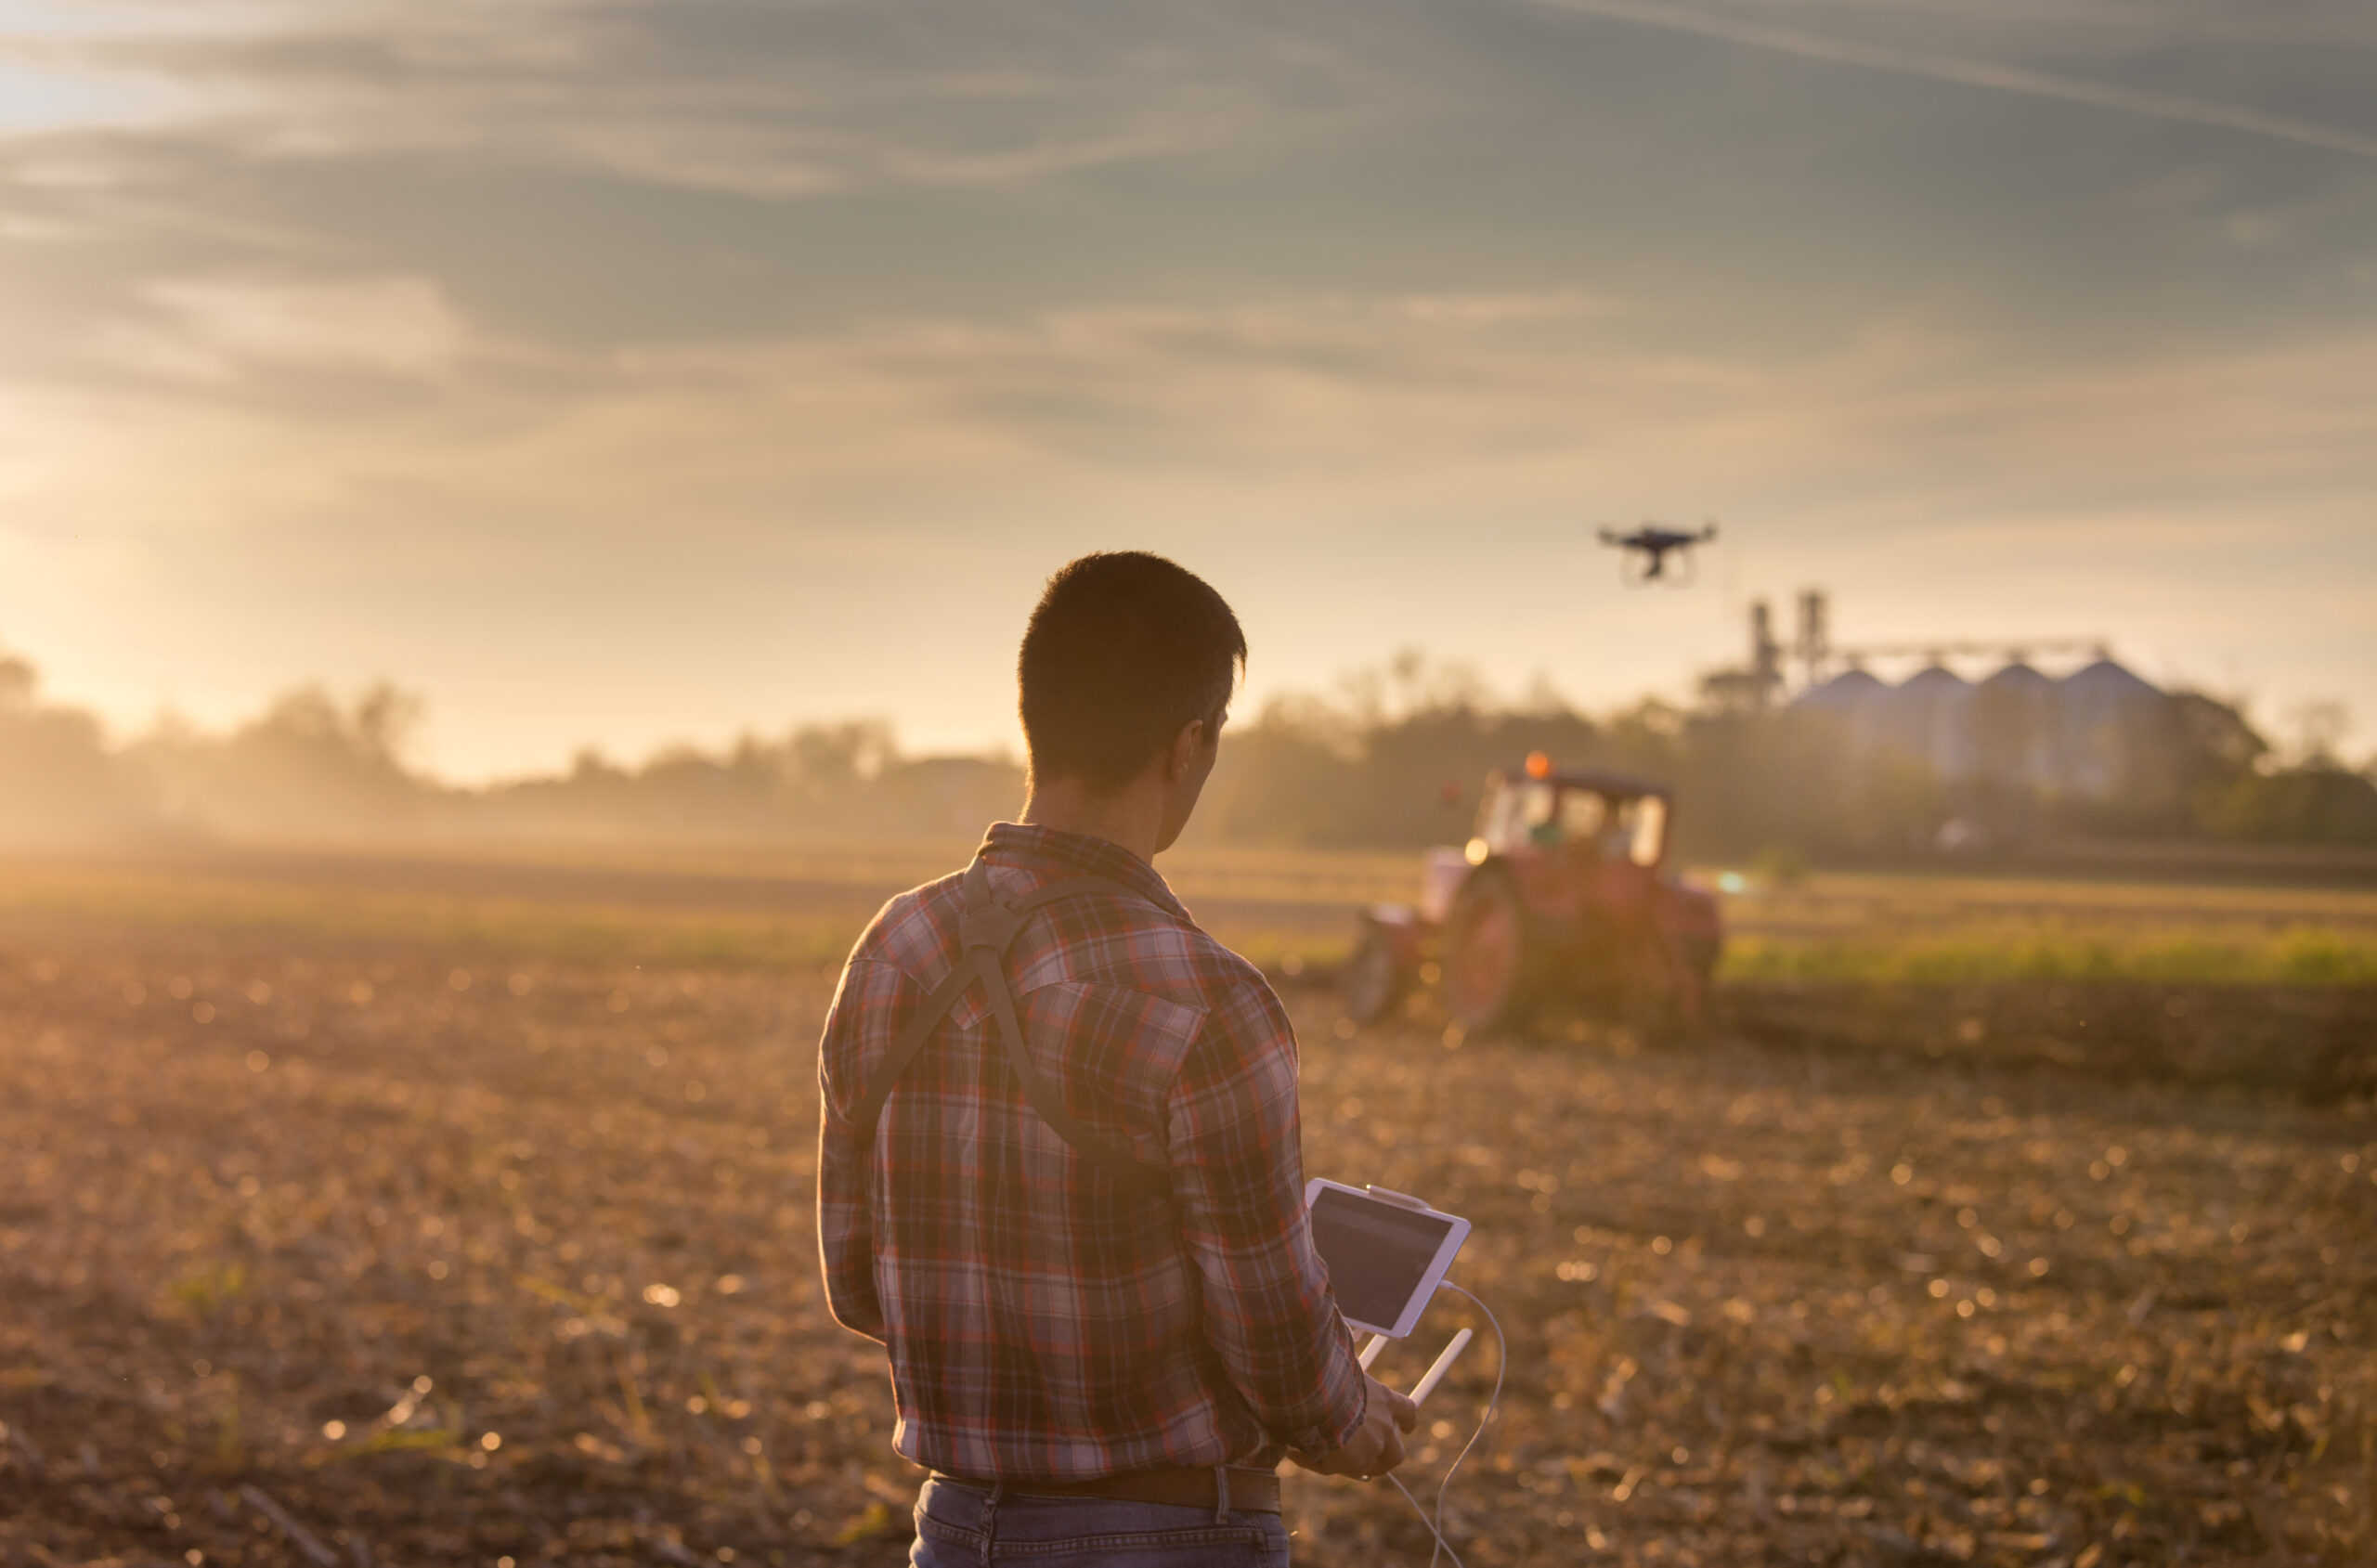 máquinas agrícolas e tecnologia no campo